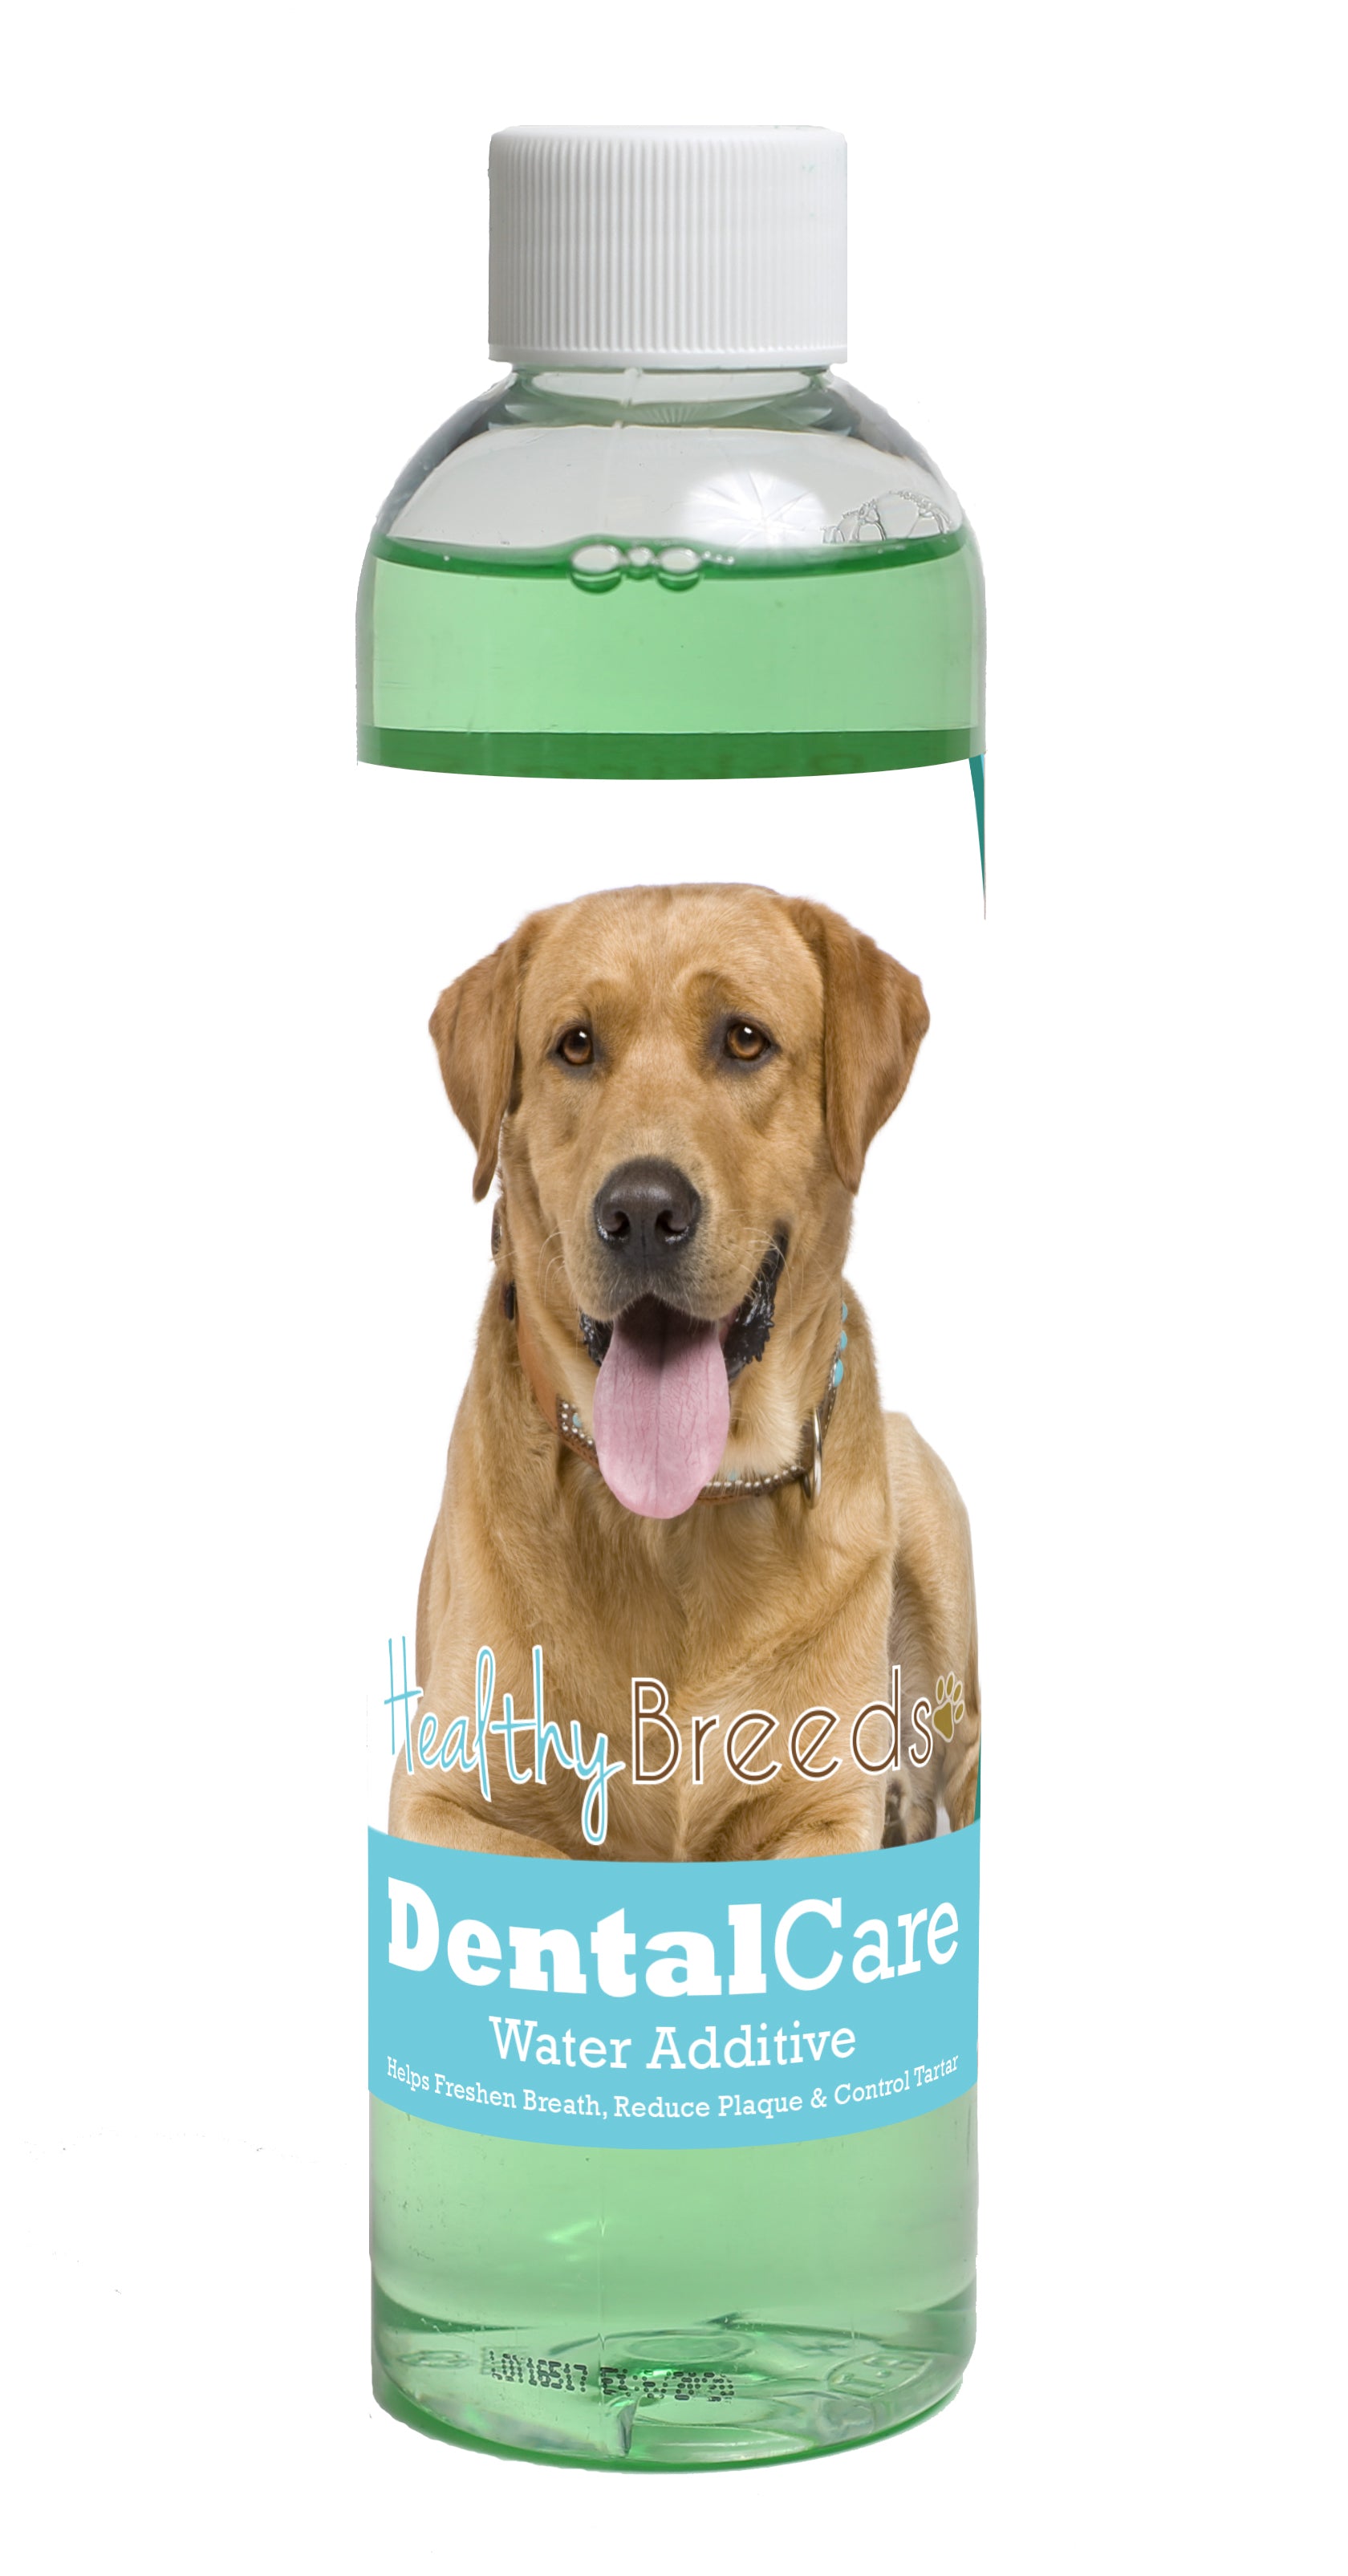 Labrador Retriever Dental Rinse for Dogs 8 oz